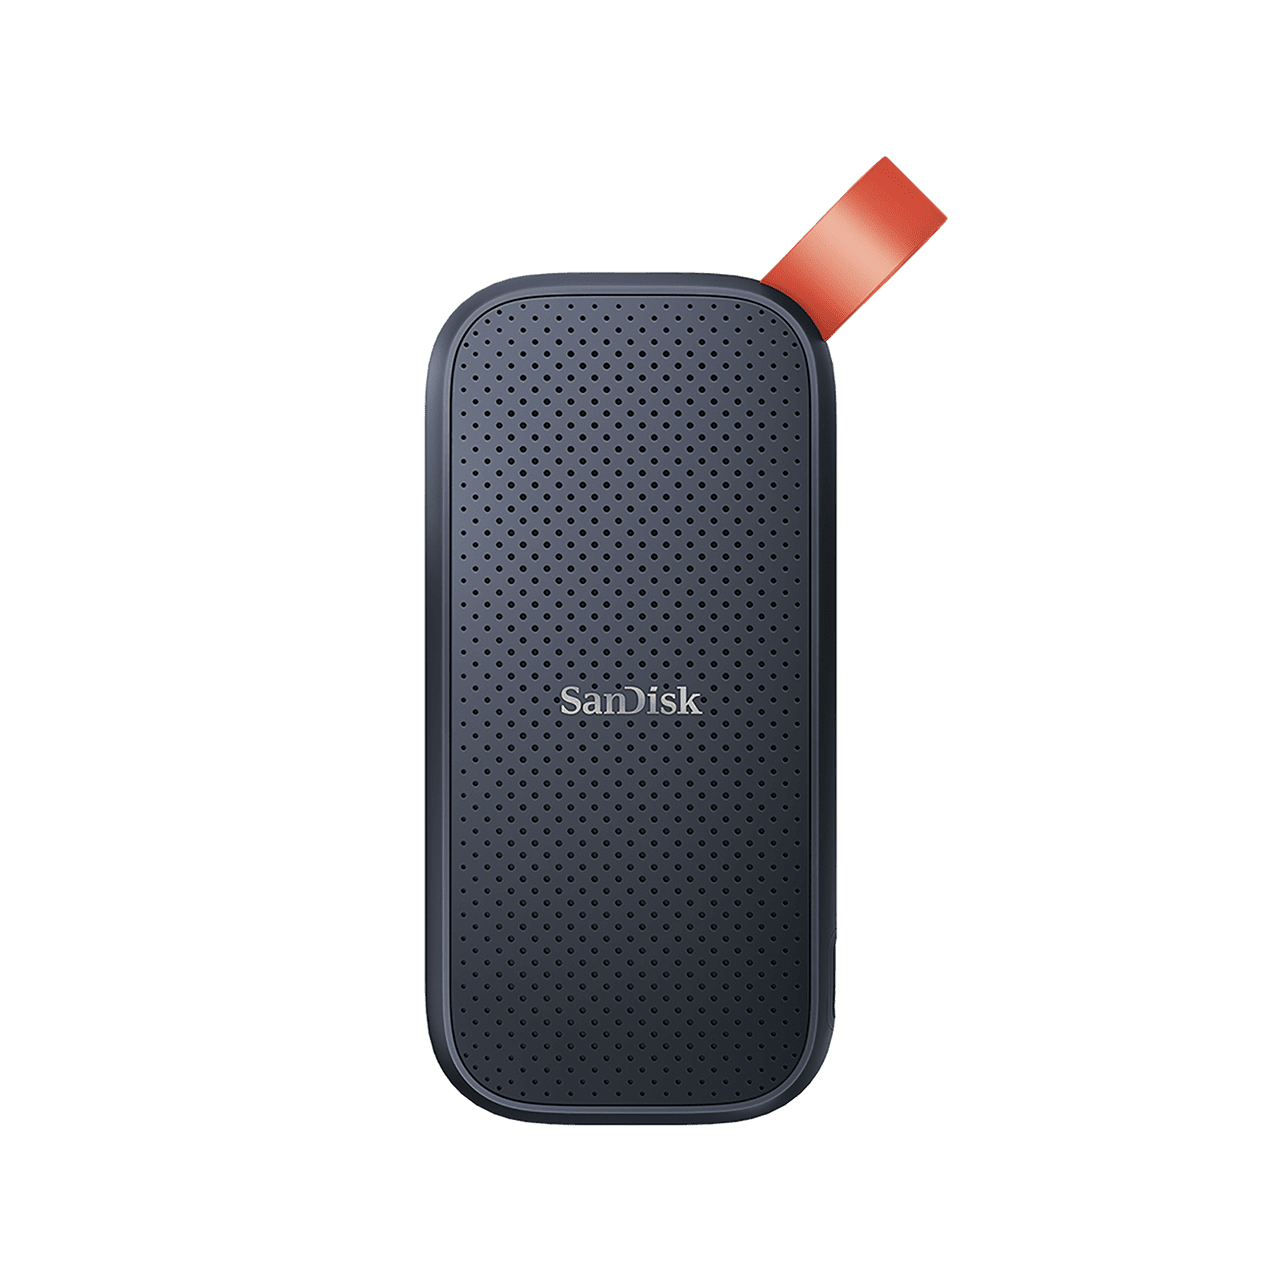 SanDisk Portable